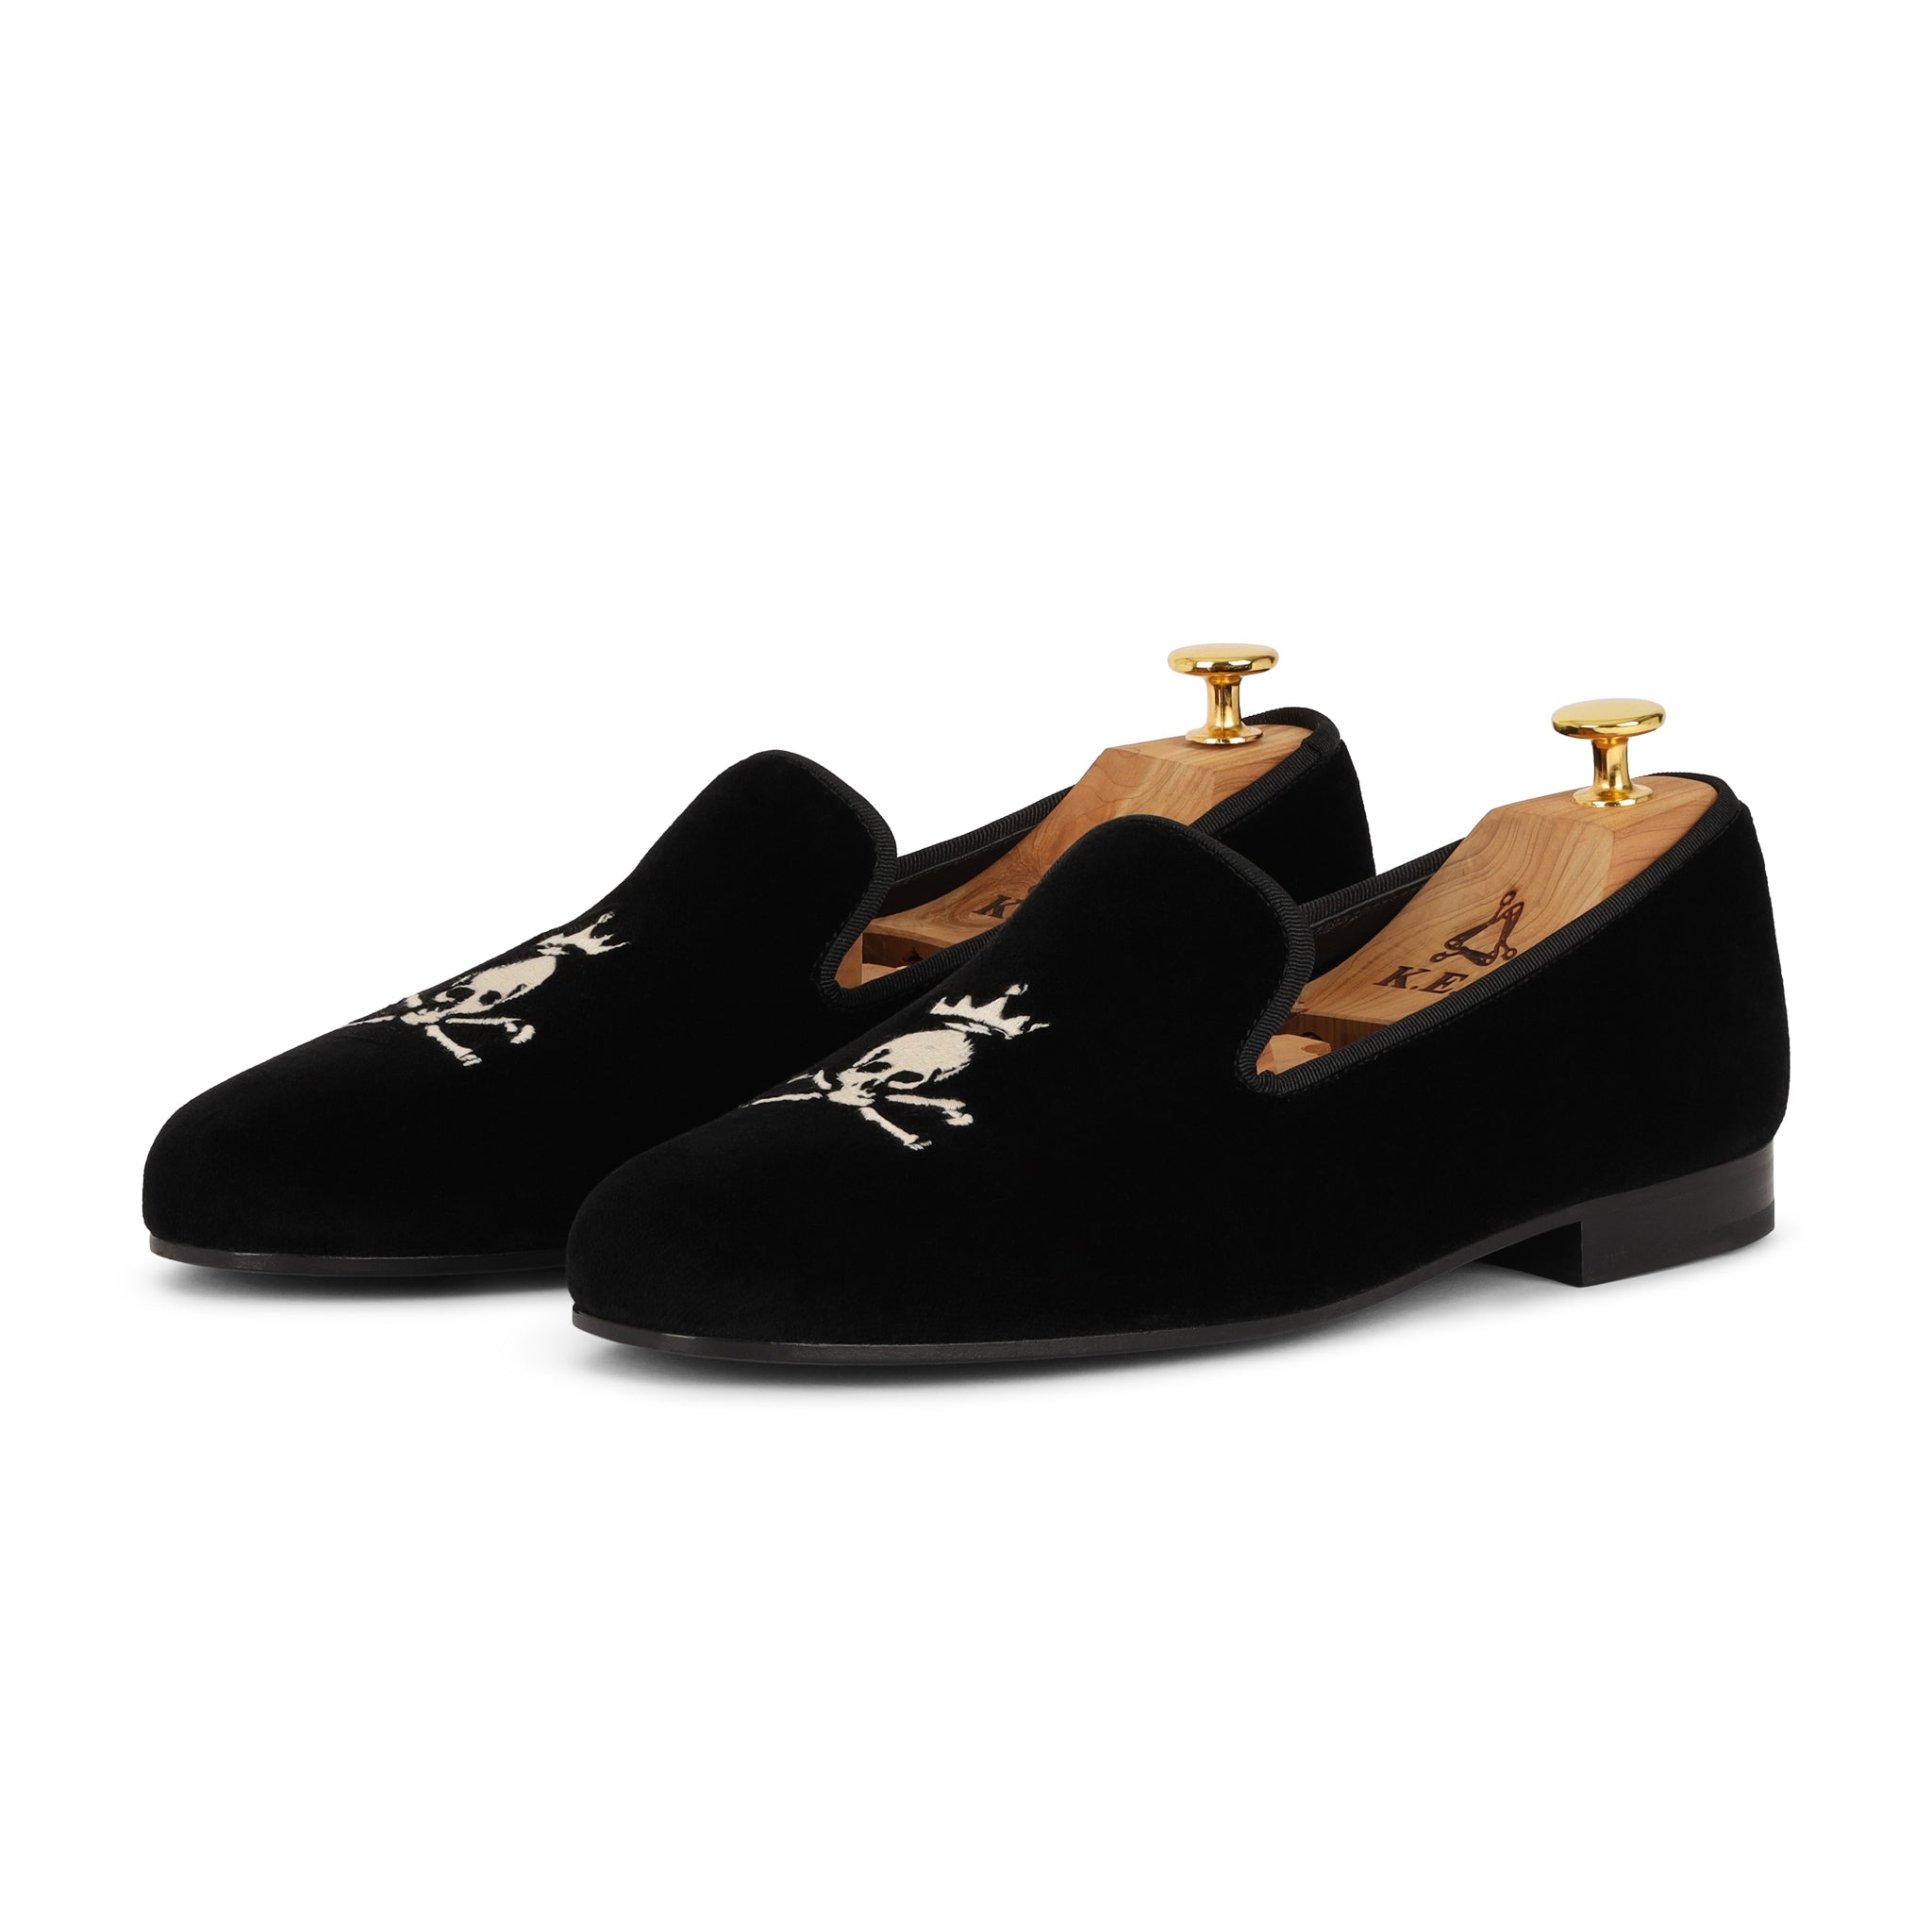 black velvet slippers with couple's monogram | Monogrammed slippers,  Embroidered shoes, Black velvet slippers